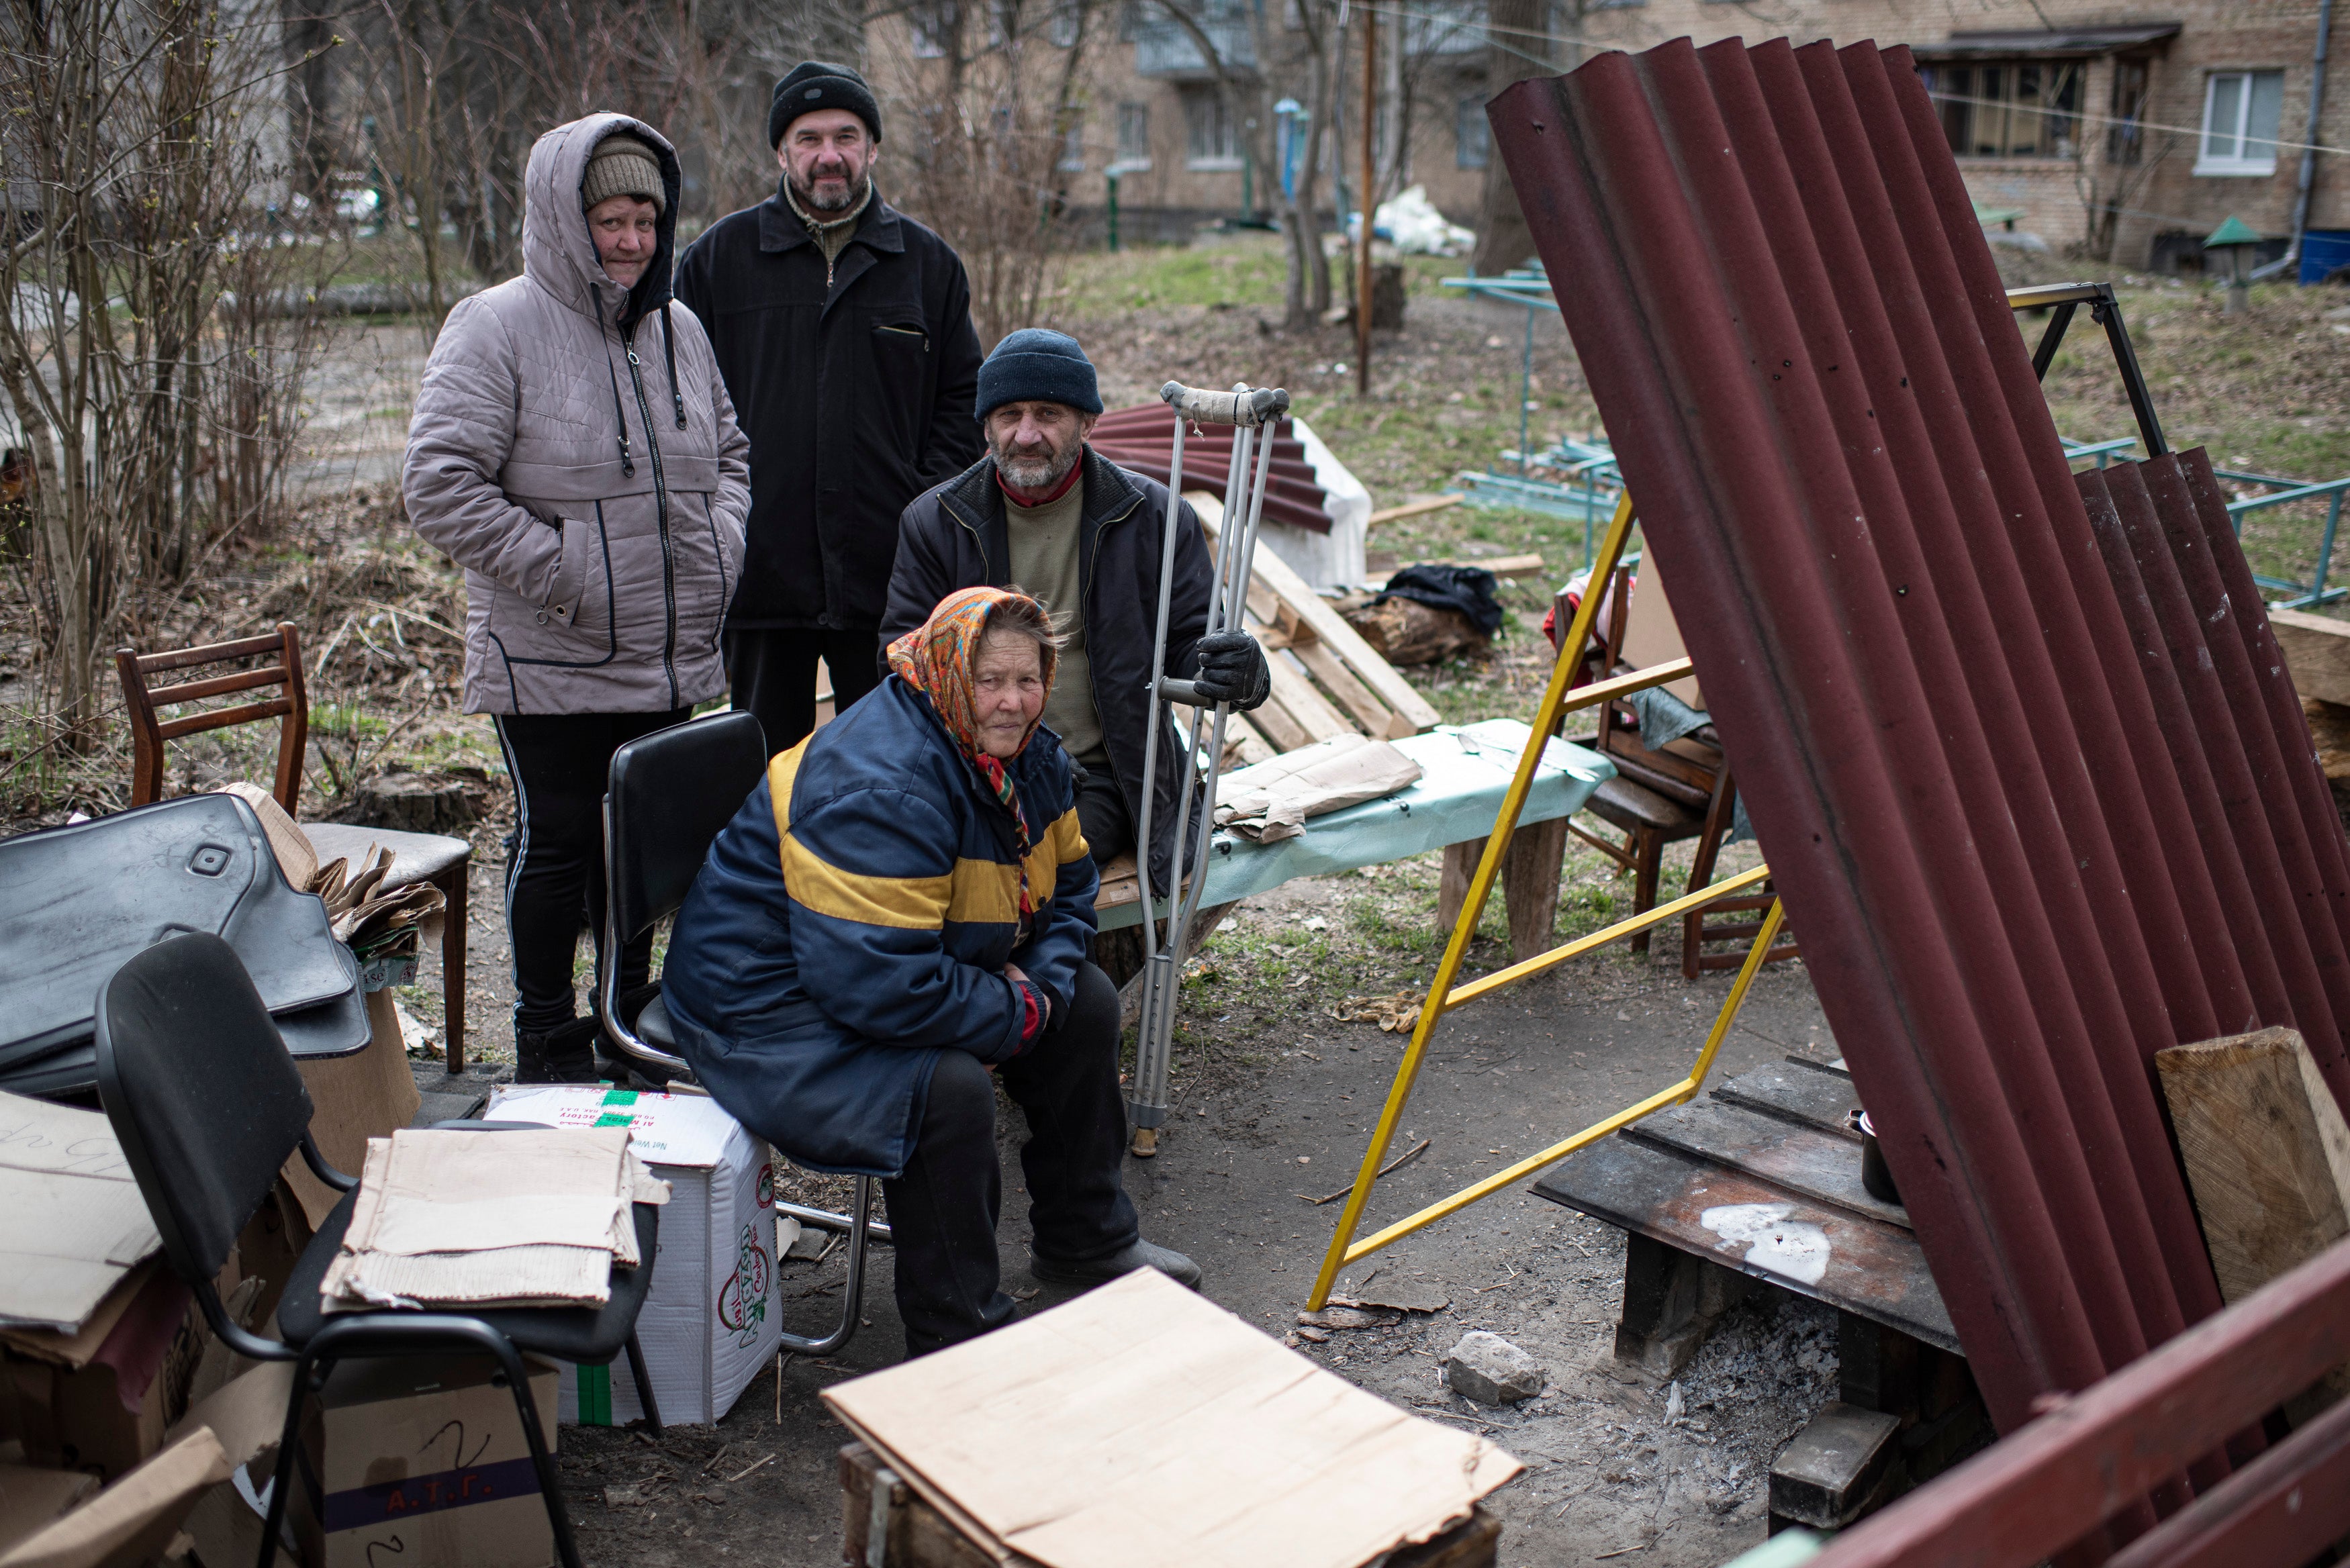 Un grupo de personas se sienta junto a una estufa improvisada al lado de su edificio de apartamentos en Bucha, Ucrania. El gobierno ucraniano ha acusado a las fuerzas rusas de cometer una “masacre deliberada” durante la ocupación y eventual retirada de Bucha